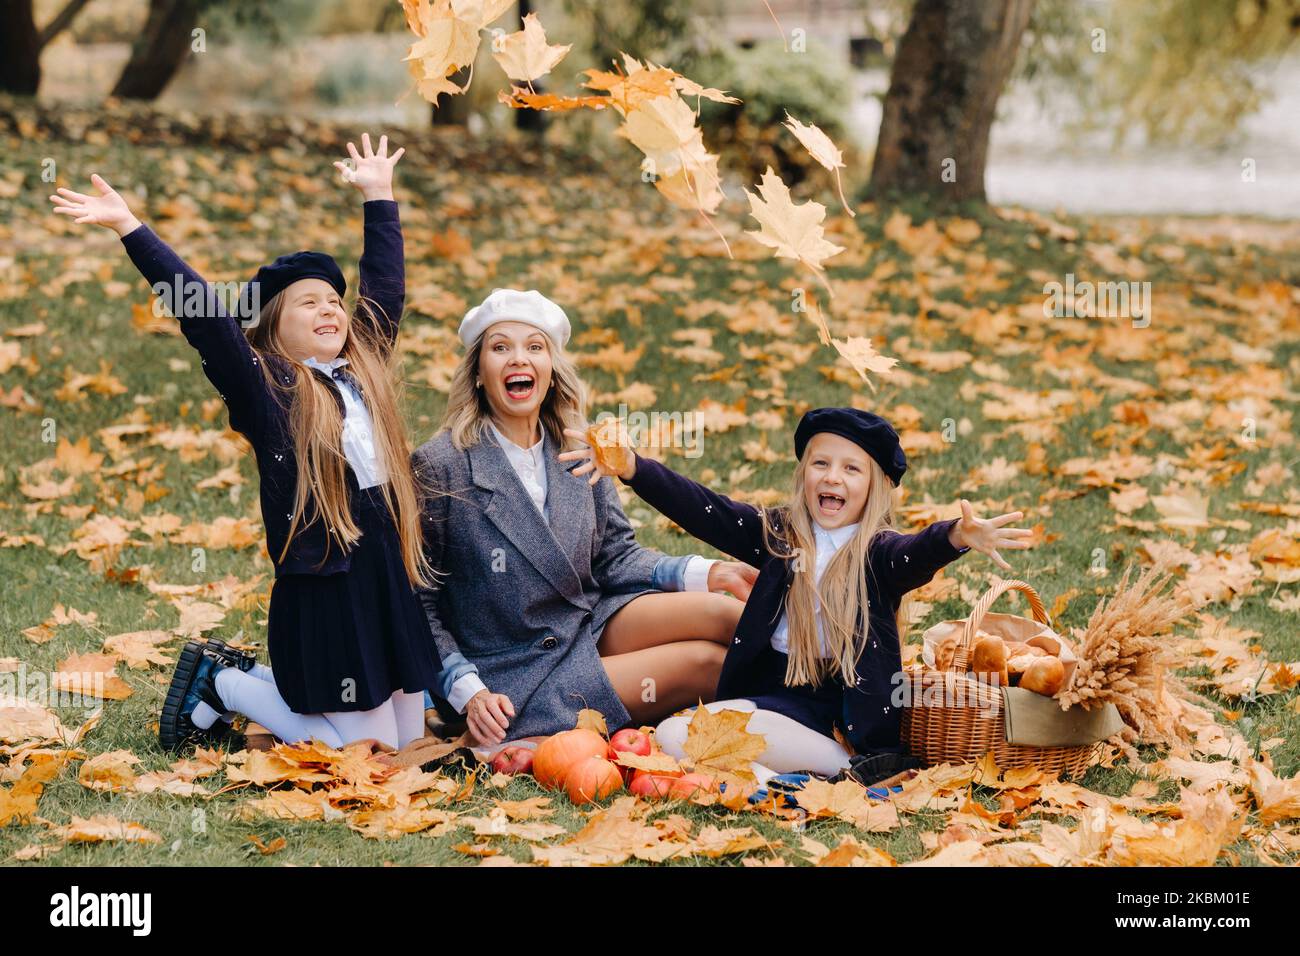 Eine große Familie auf einem Picknick im Herbst in einem Naturpark. Glückliche Menschen im Herbstpark Stockfoto